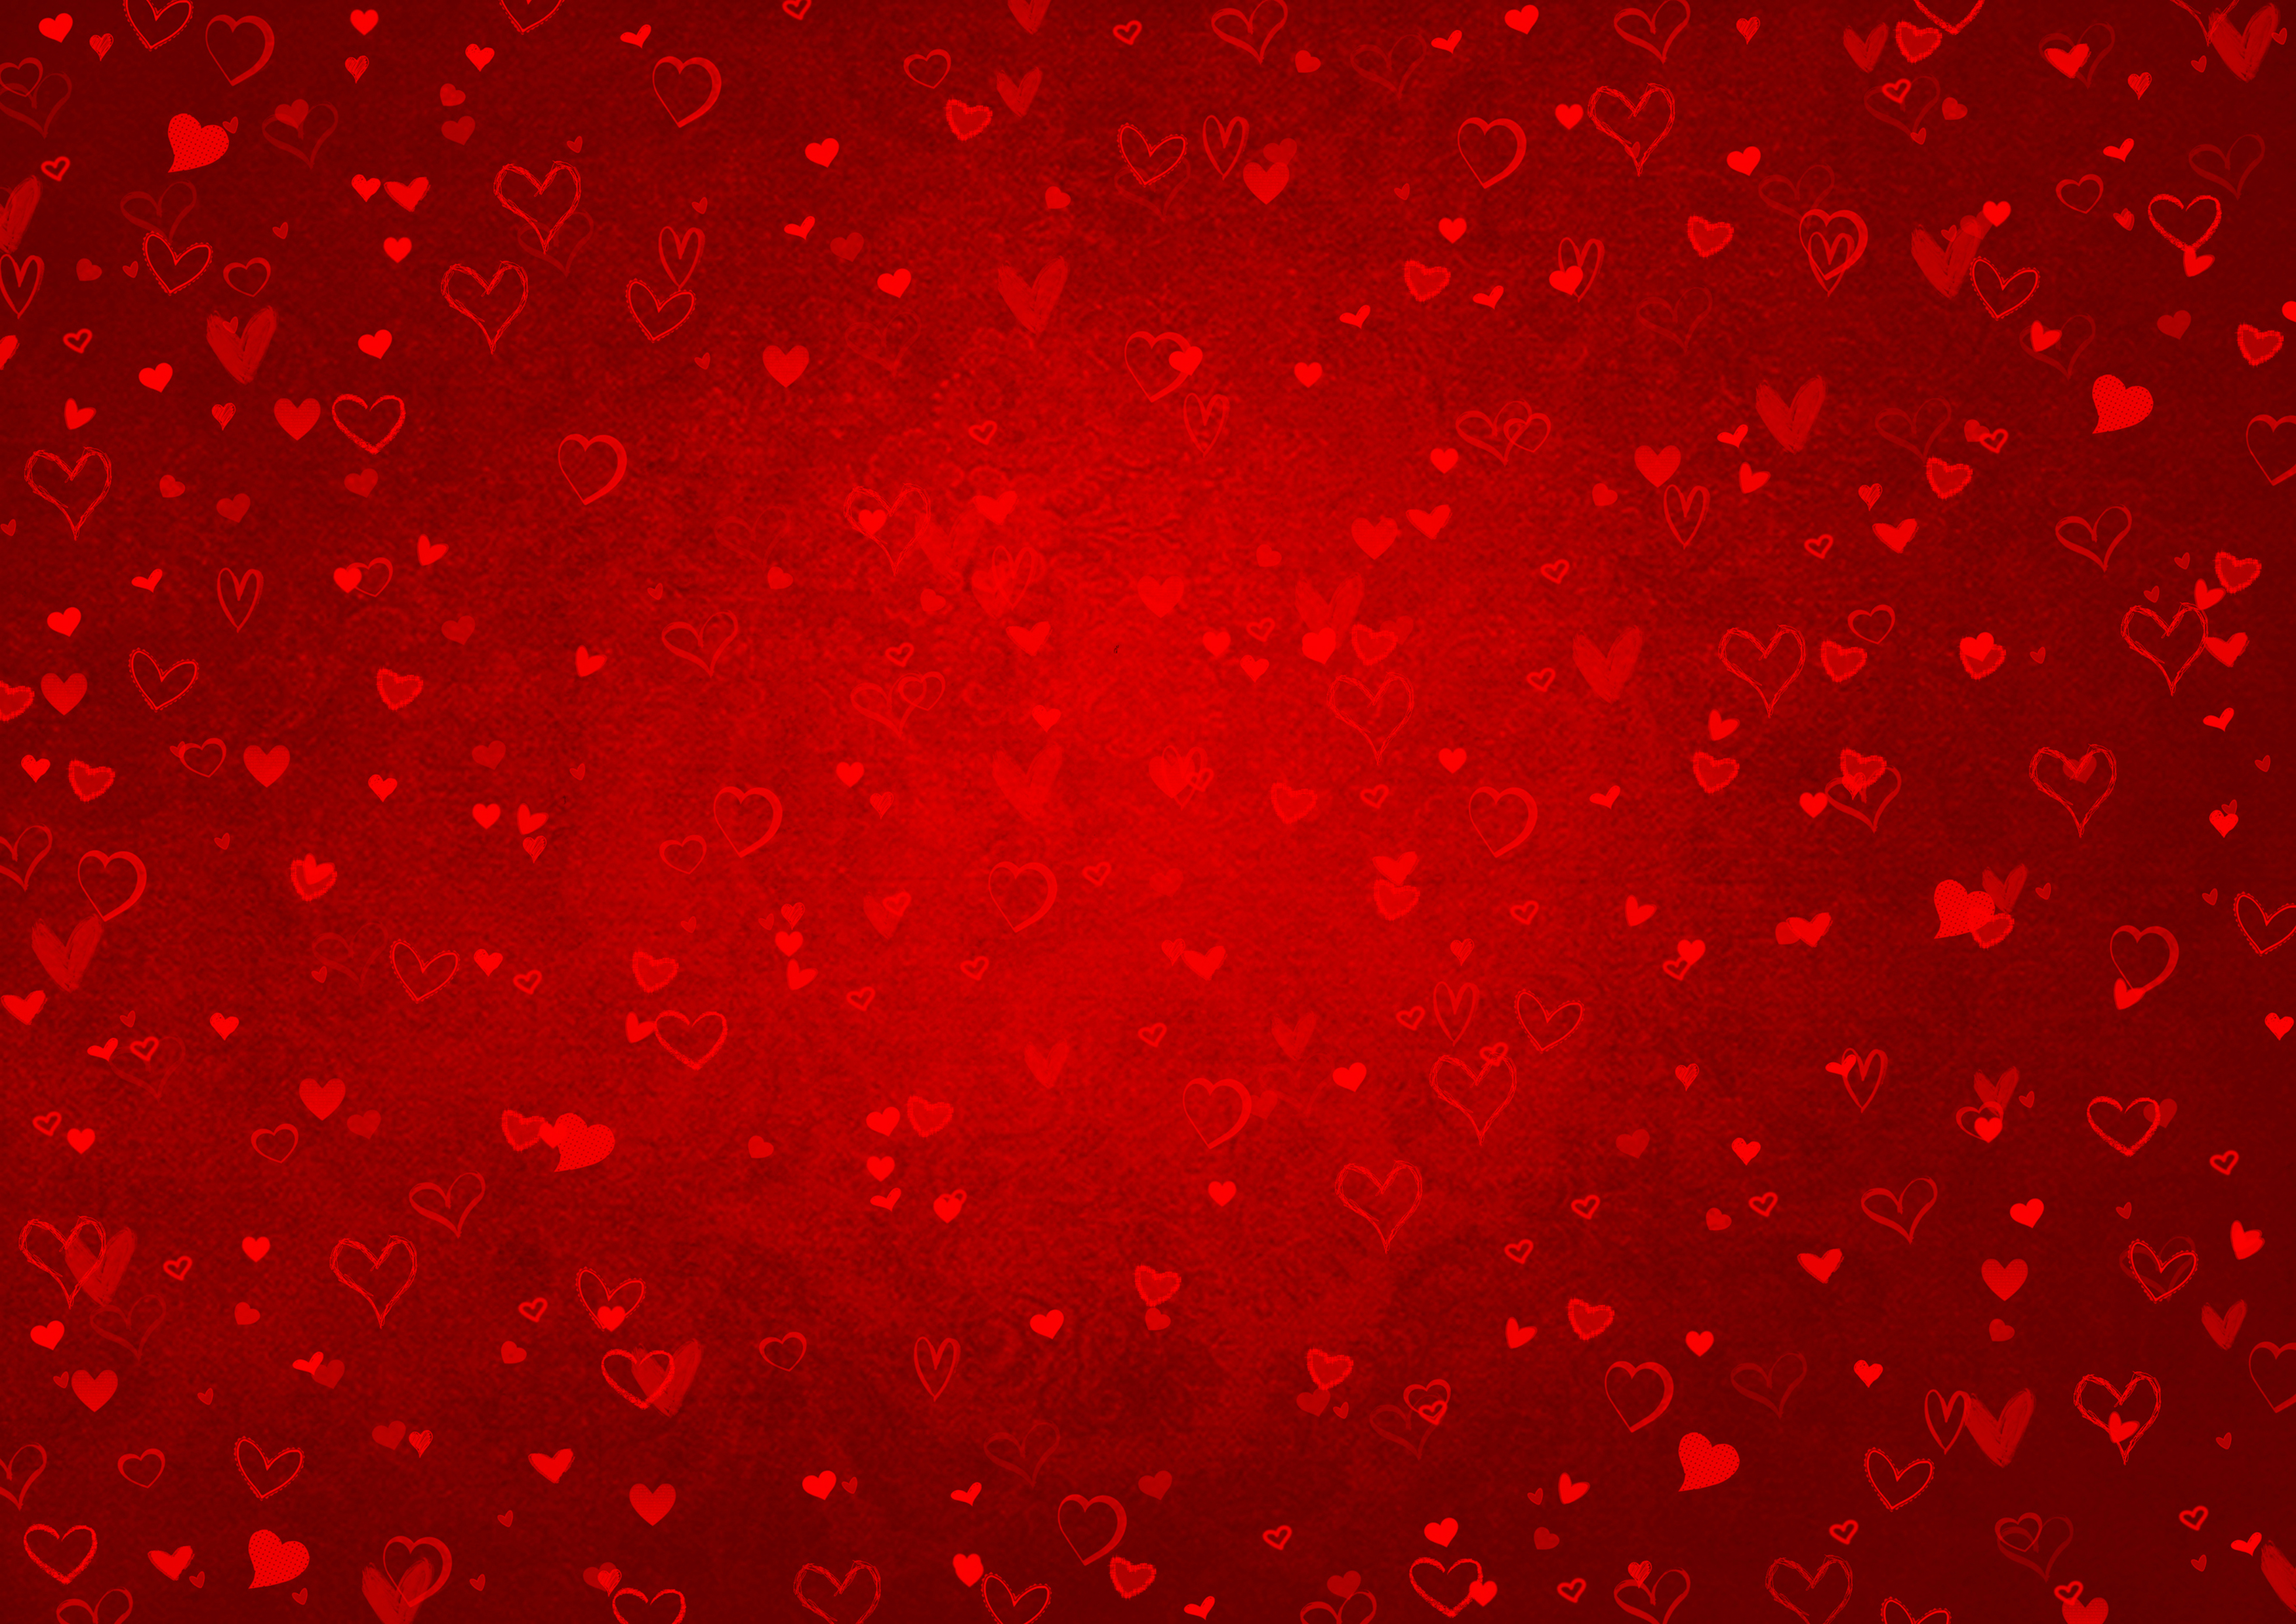 Nền đỏ trái tim có thể là biểu tượng cho tình yêu hay sự thân thiết, chân tình. Được thiết kế một cách tinh tế và sáng tạo, hình ảnh này sẽ khiến bạn cảm thấy đầy nhiệt huyết và yêu đời hơn bao giờ hết.